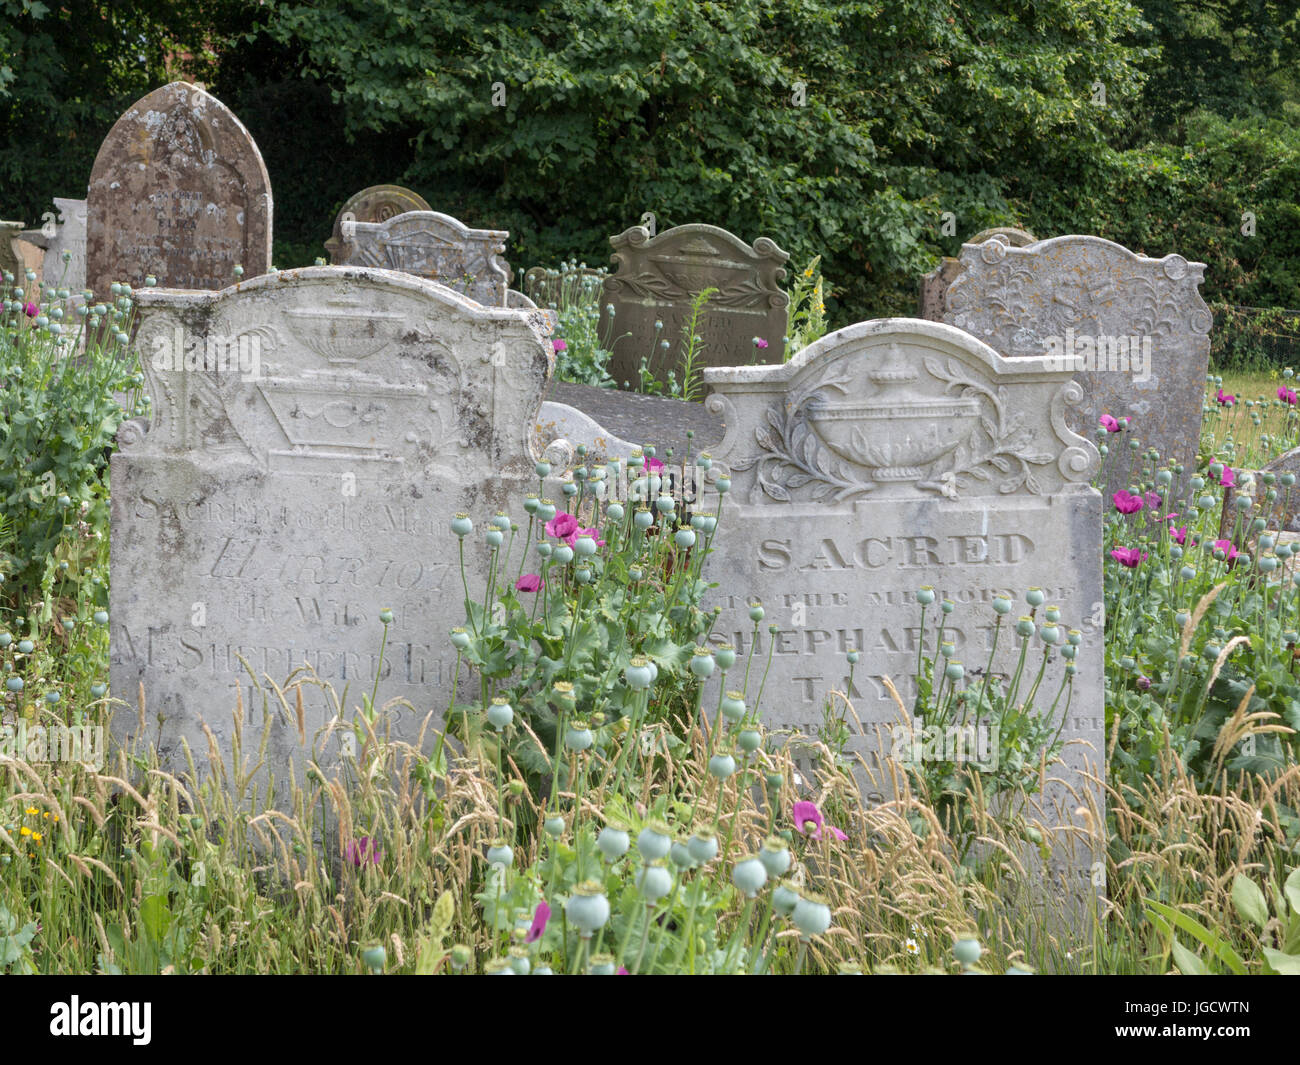 Lapidi in una sezione della fauna selvatica di un cimitero con fiori ed erbe Foto Stock